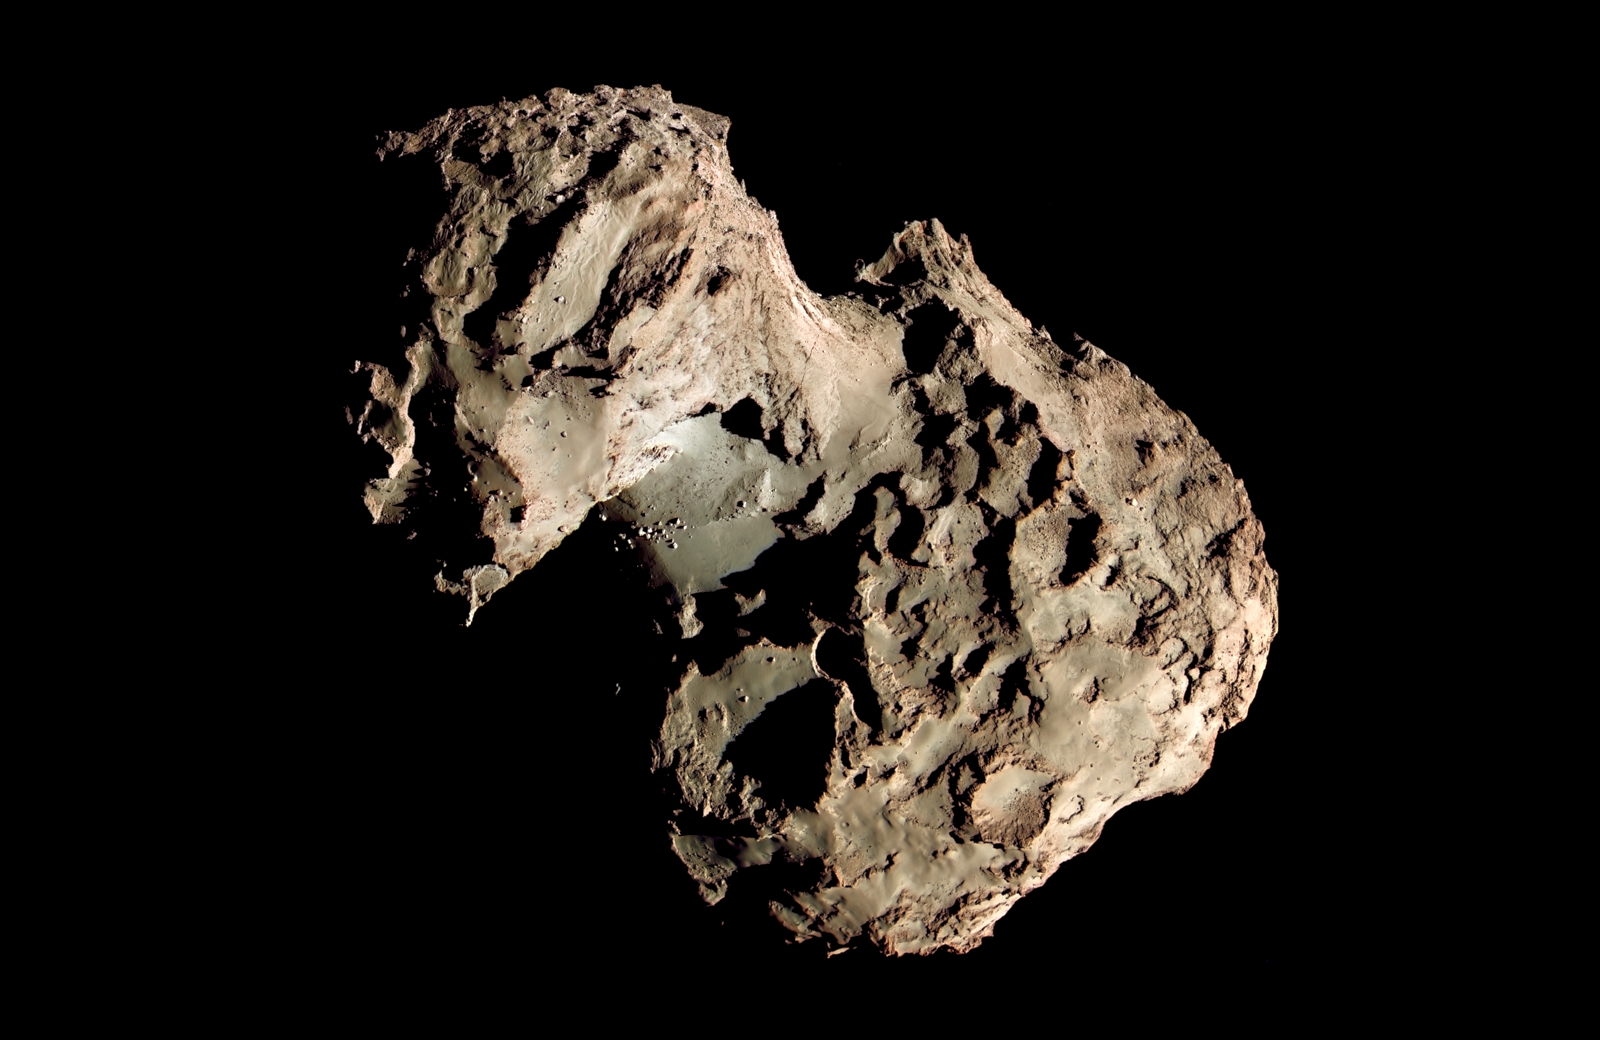 Άρωμα θαλασσινής αύρας ανιχνεύθηκε σε κομήτη – Κακά μαντάτα για την αναζήτηση ζωής